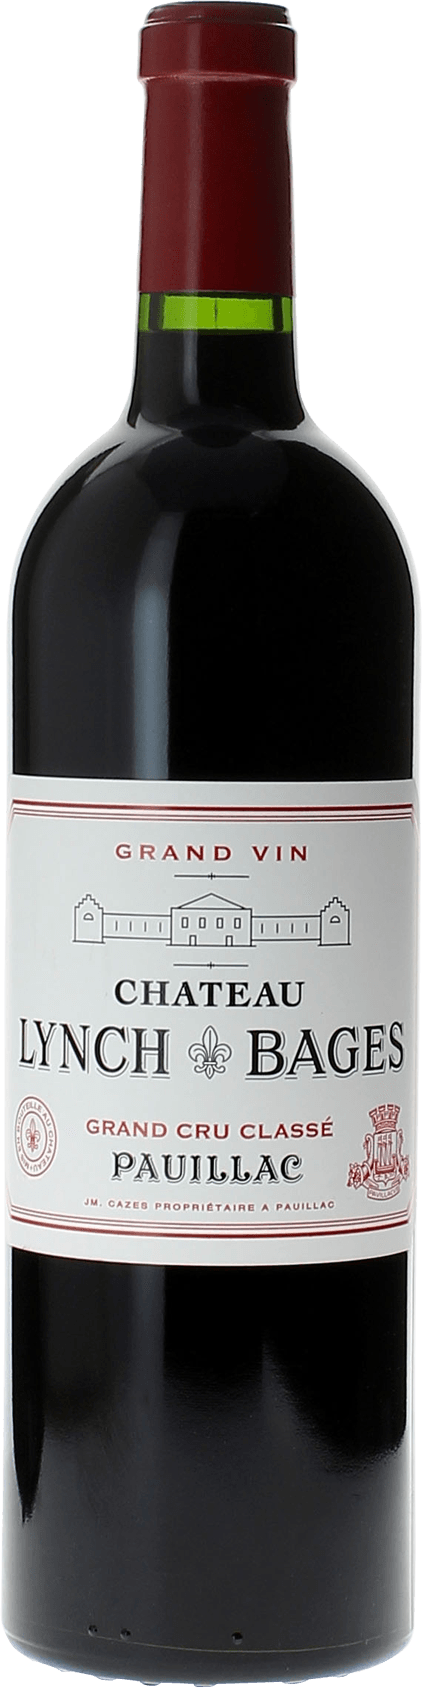 Lynch bages 2003 5 me Grand cru class Pauillac, Bordeaux rouge